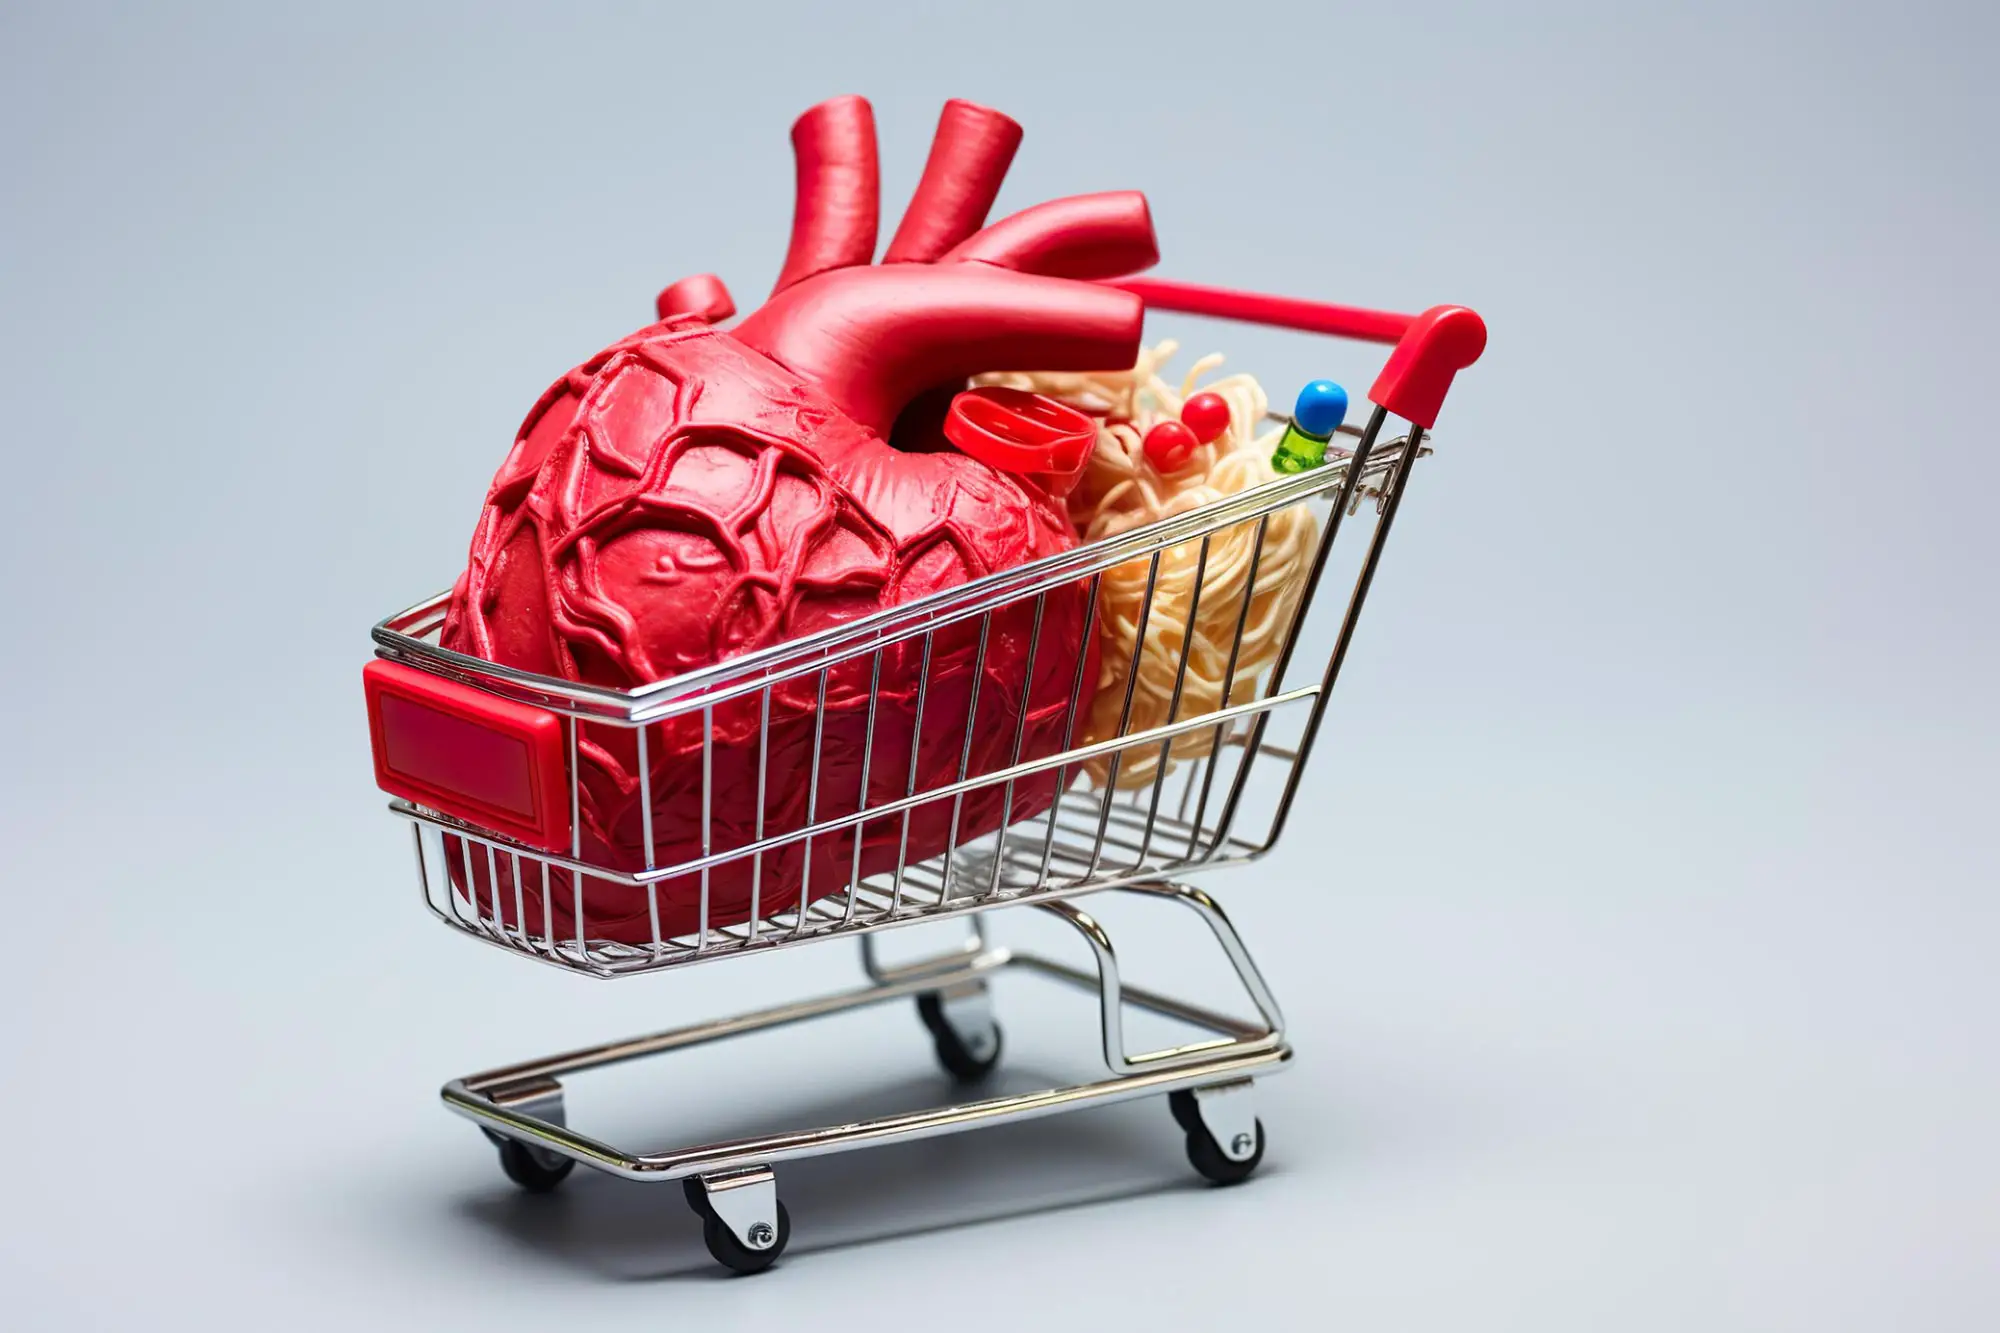 تشخیص زودهنگام خطر سکته قلبی با چرخ دستی فروشگاه
